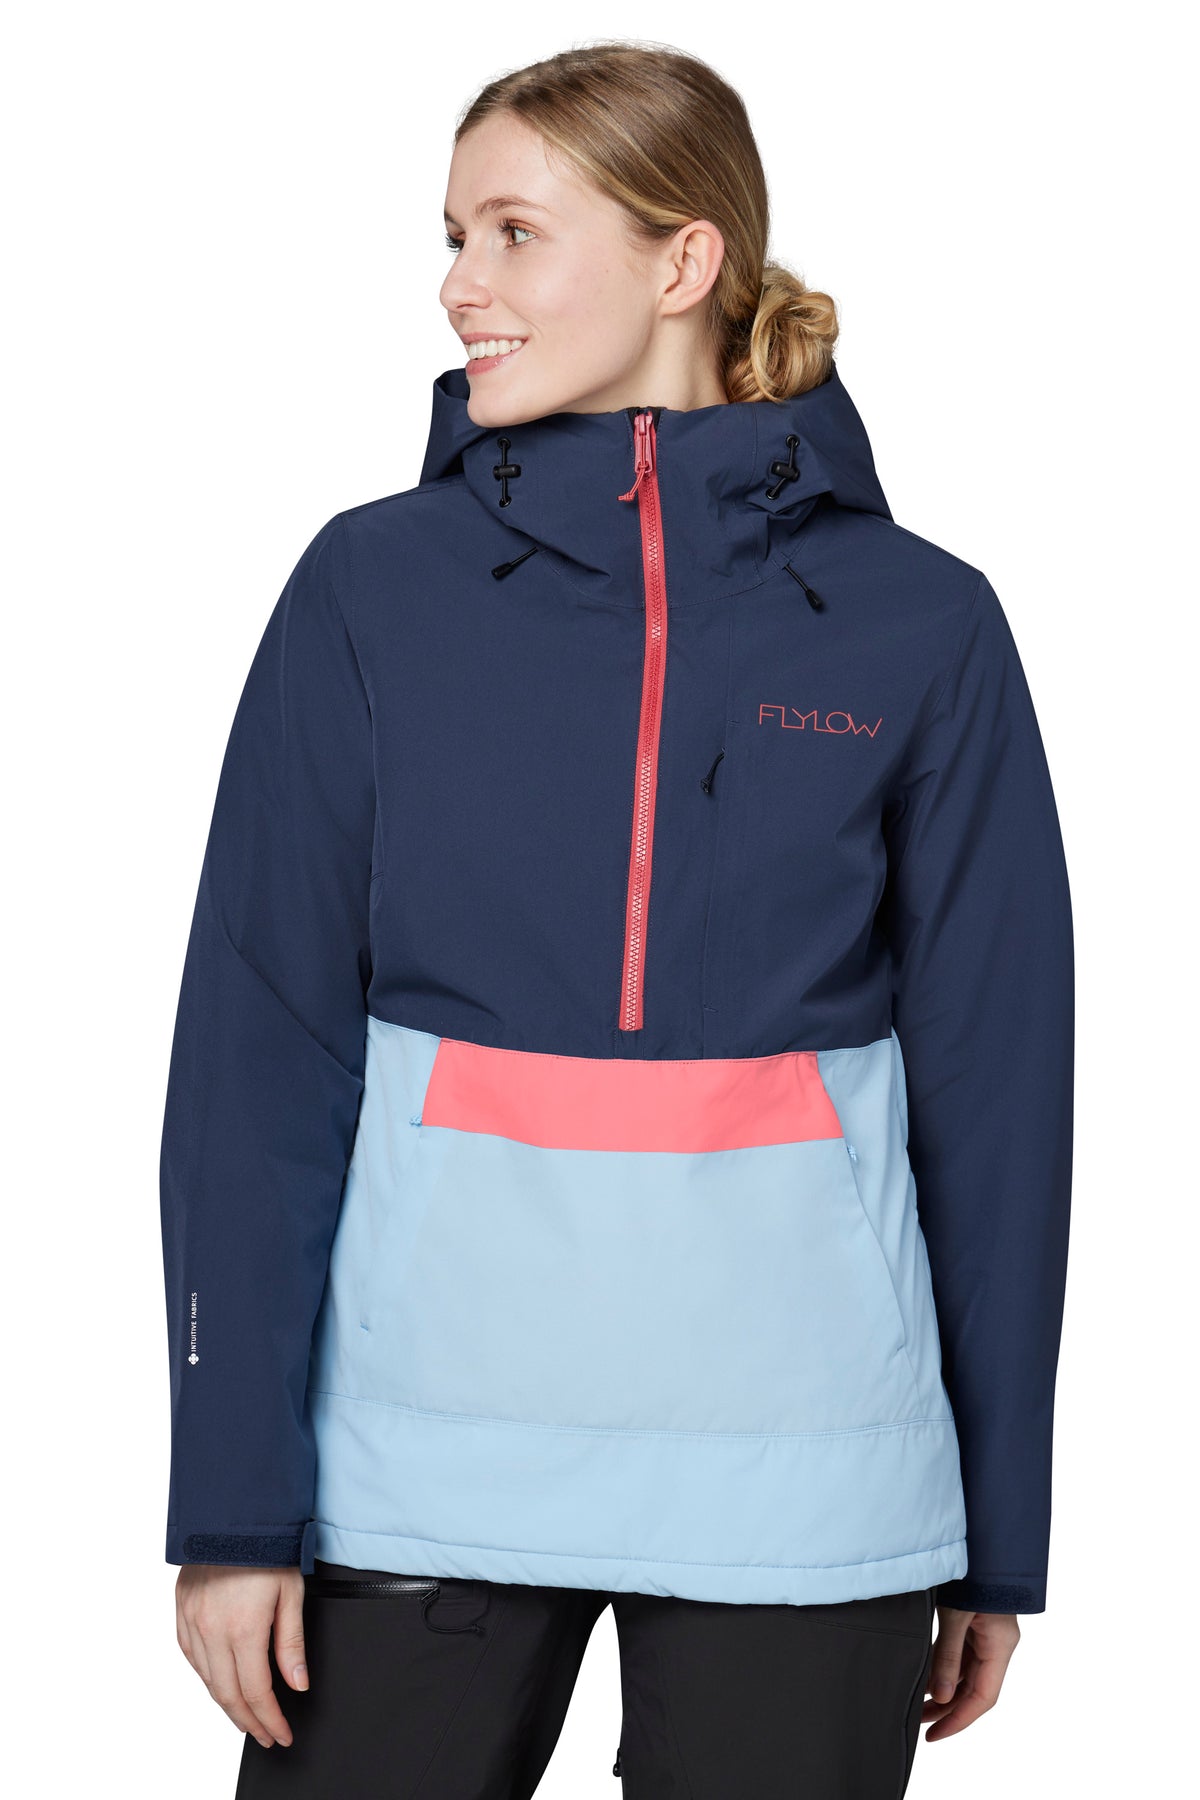 Women's Ski Jackets, Ski Coats